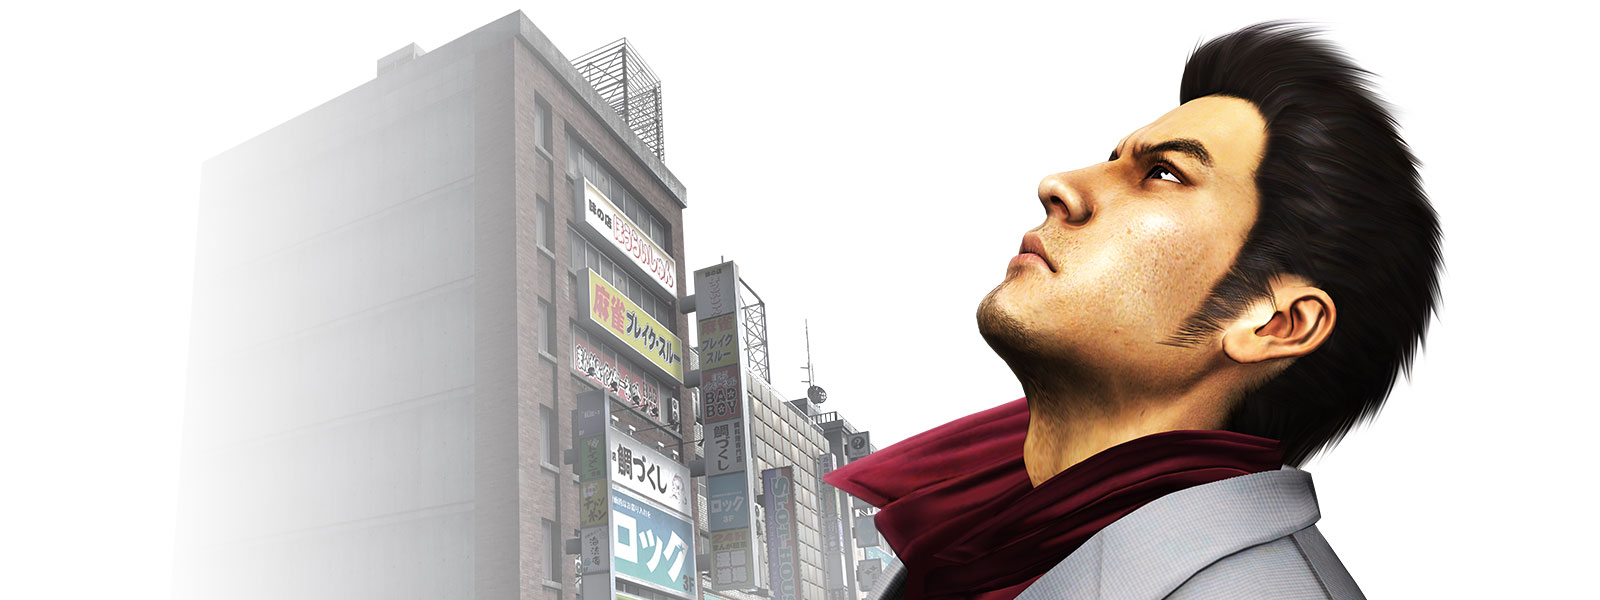 Kazuma Kiryu looking up at the sky over a city backdrop